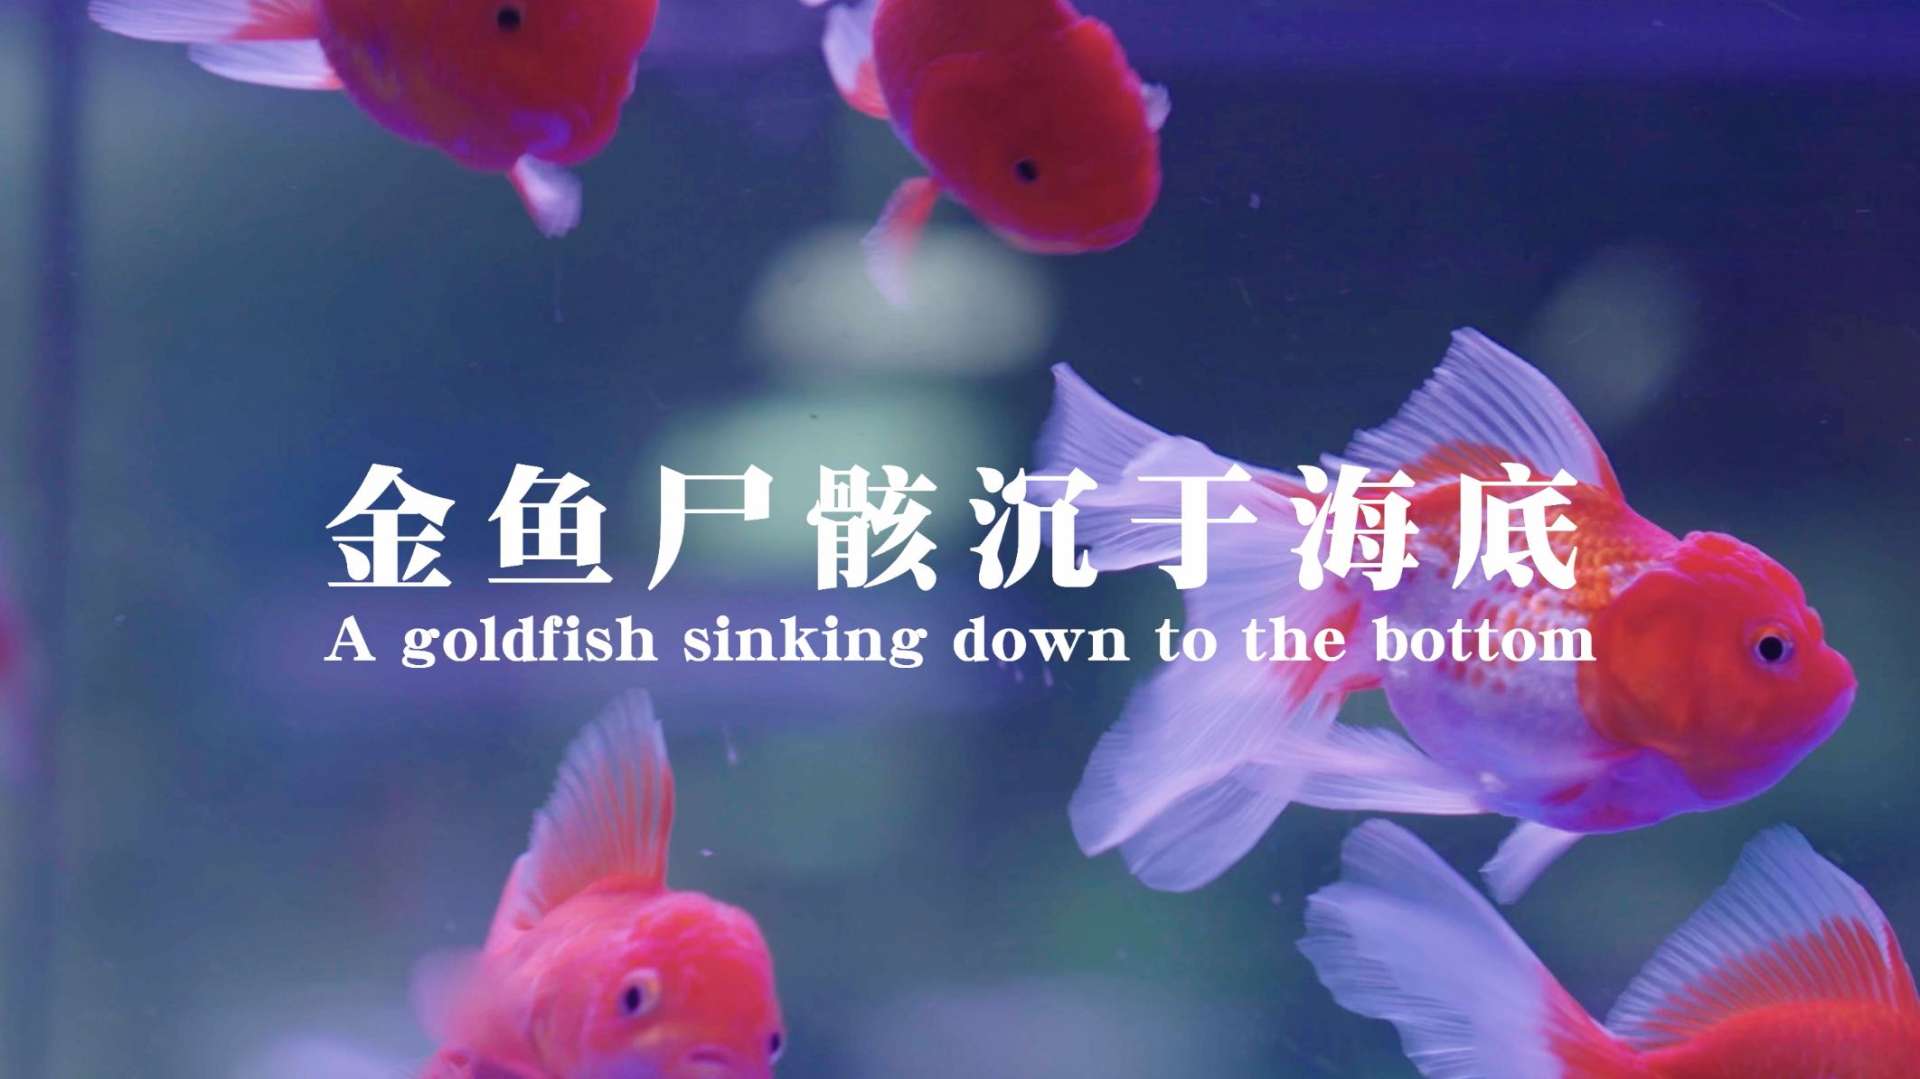 剧情短片《金鱼尸骸沉于海底》(A Sinking Goldfish)